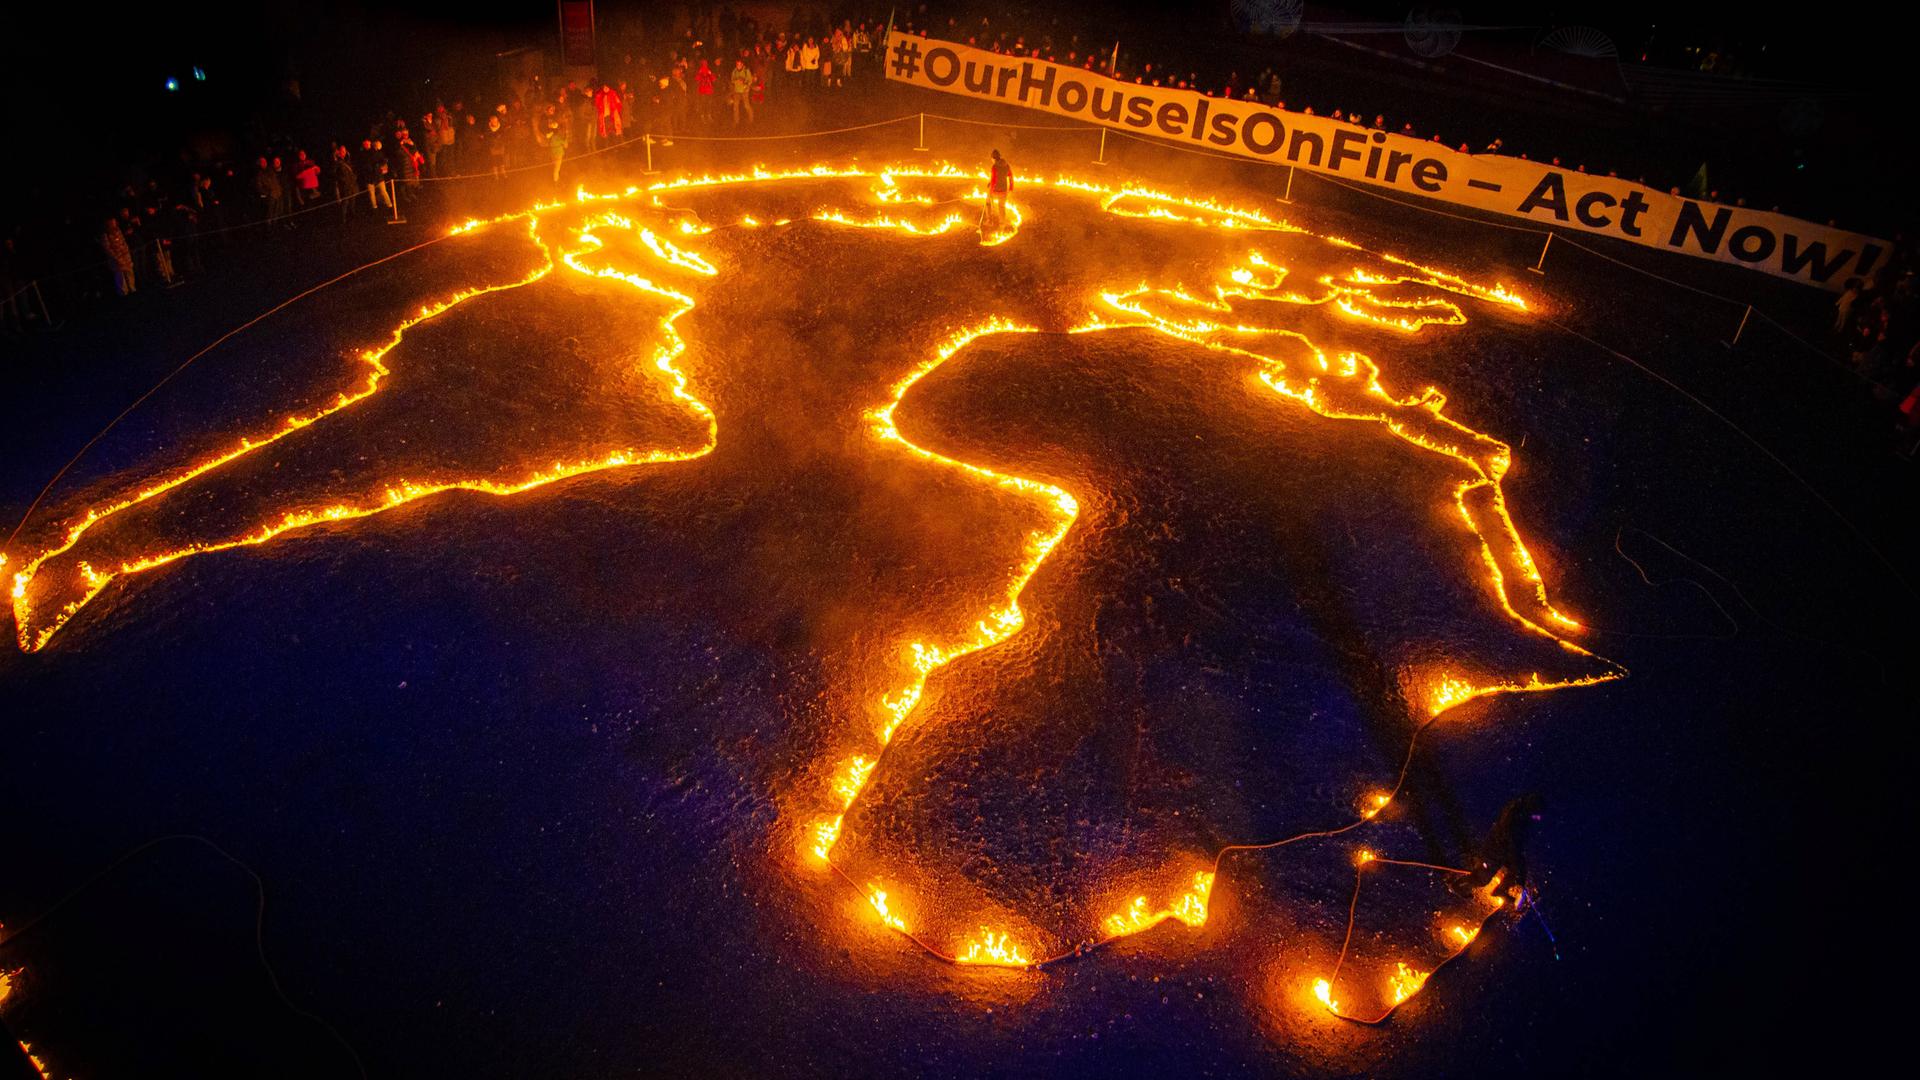 Ein auf den Boden gelegter Umriss der Erde von 30 Metern wird in Brand gesetzt. Darüber hält eine Menschenmege ein Spruchband auf dem steht "#OurHouseIsOnFire - Act Now"